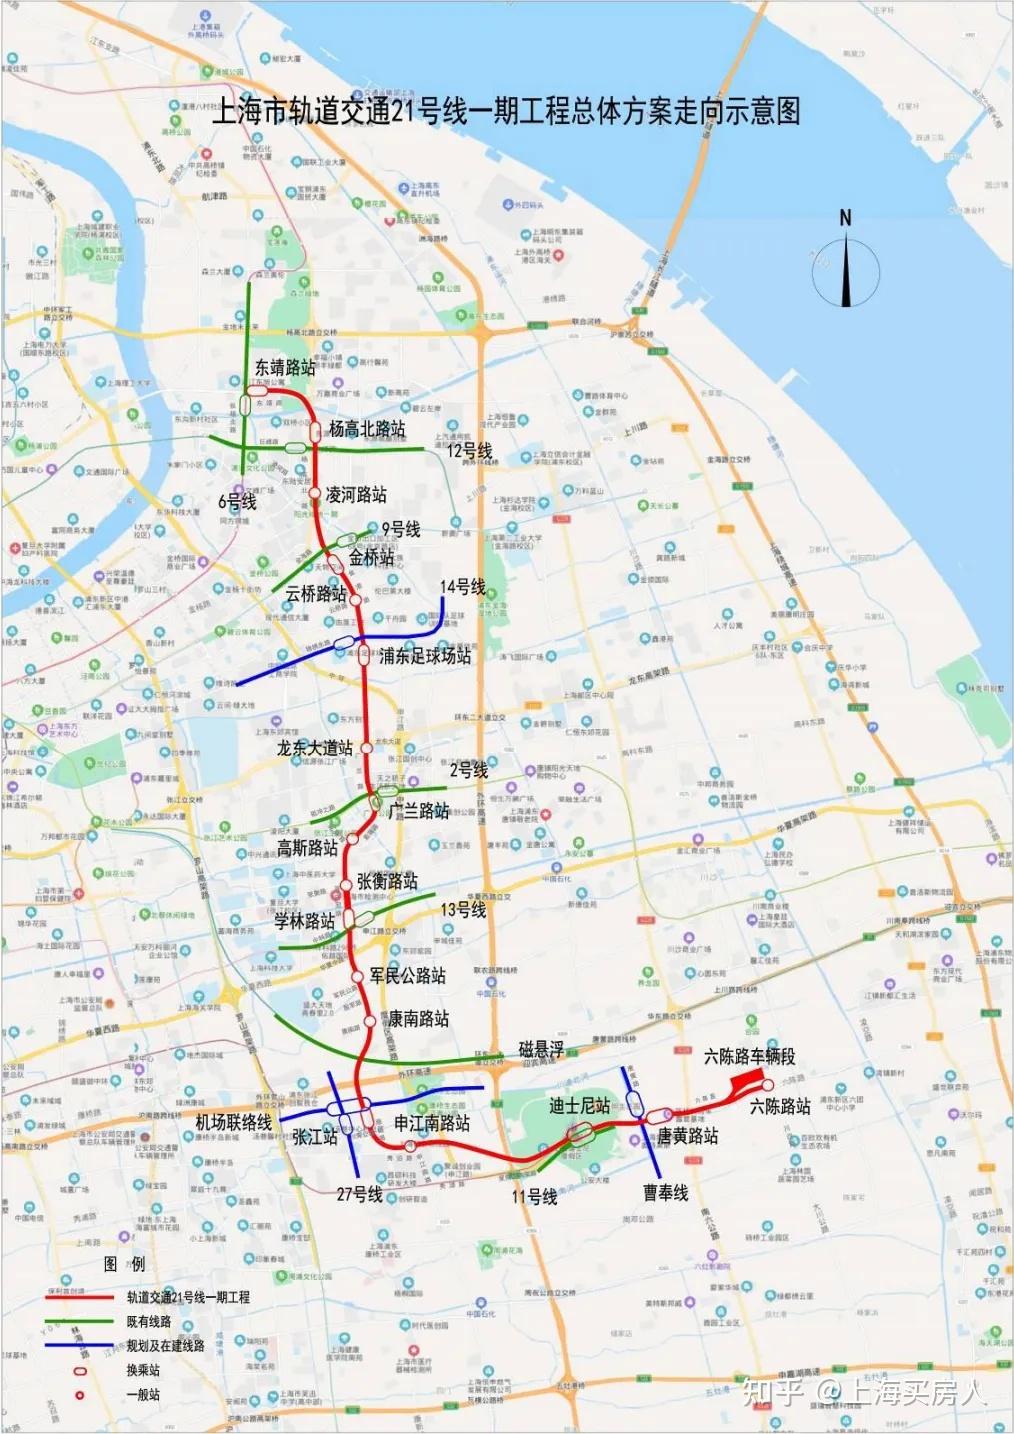 上海这条地铁苦等8年最新进展来了!工期,站点首次披露!